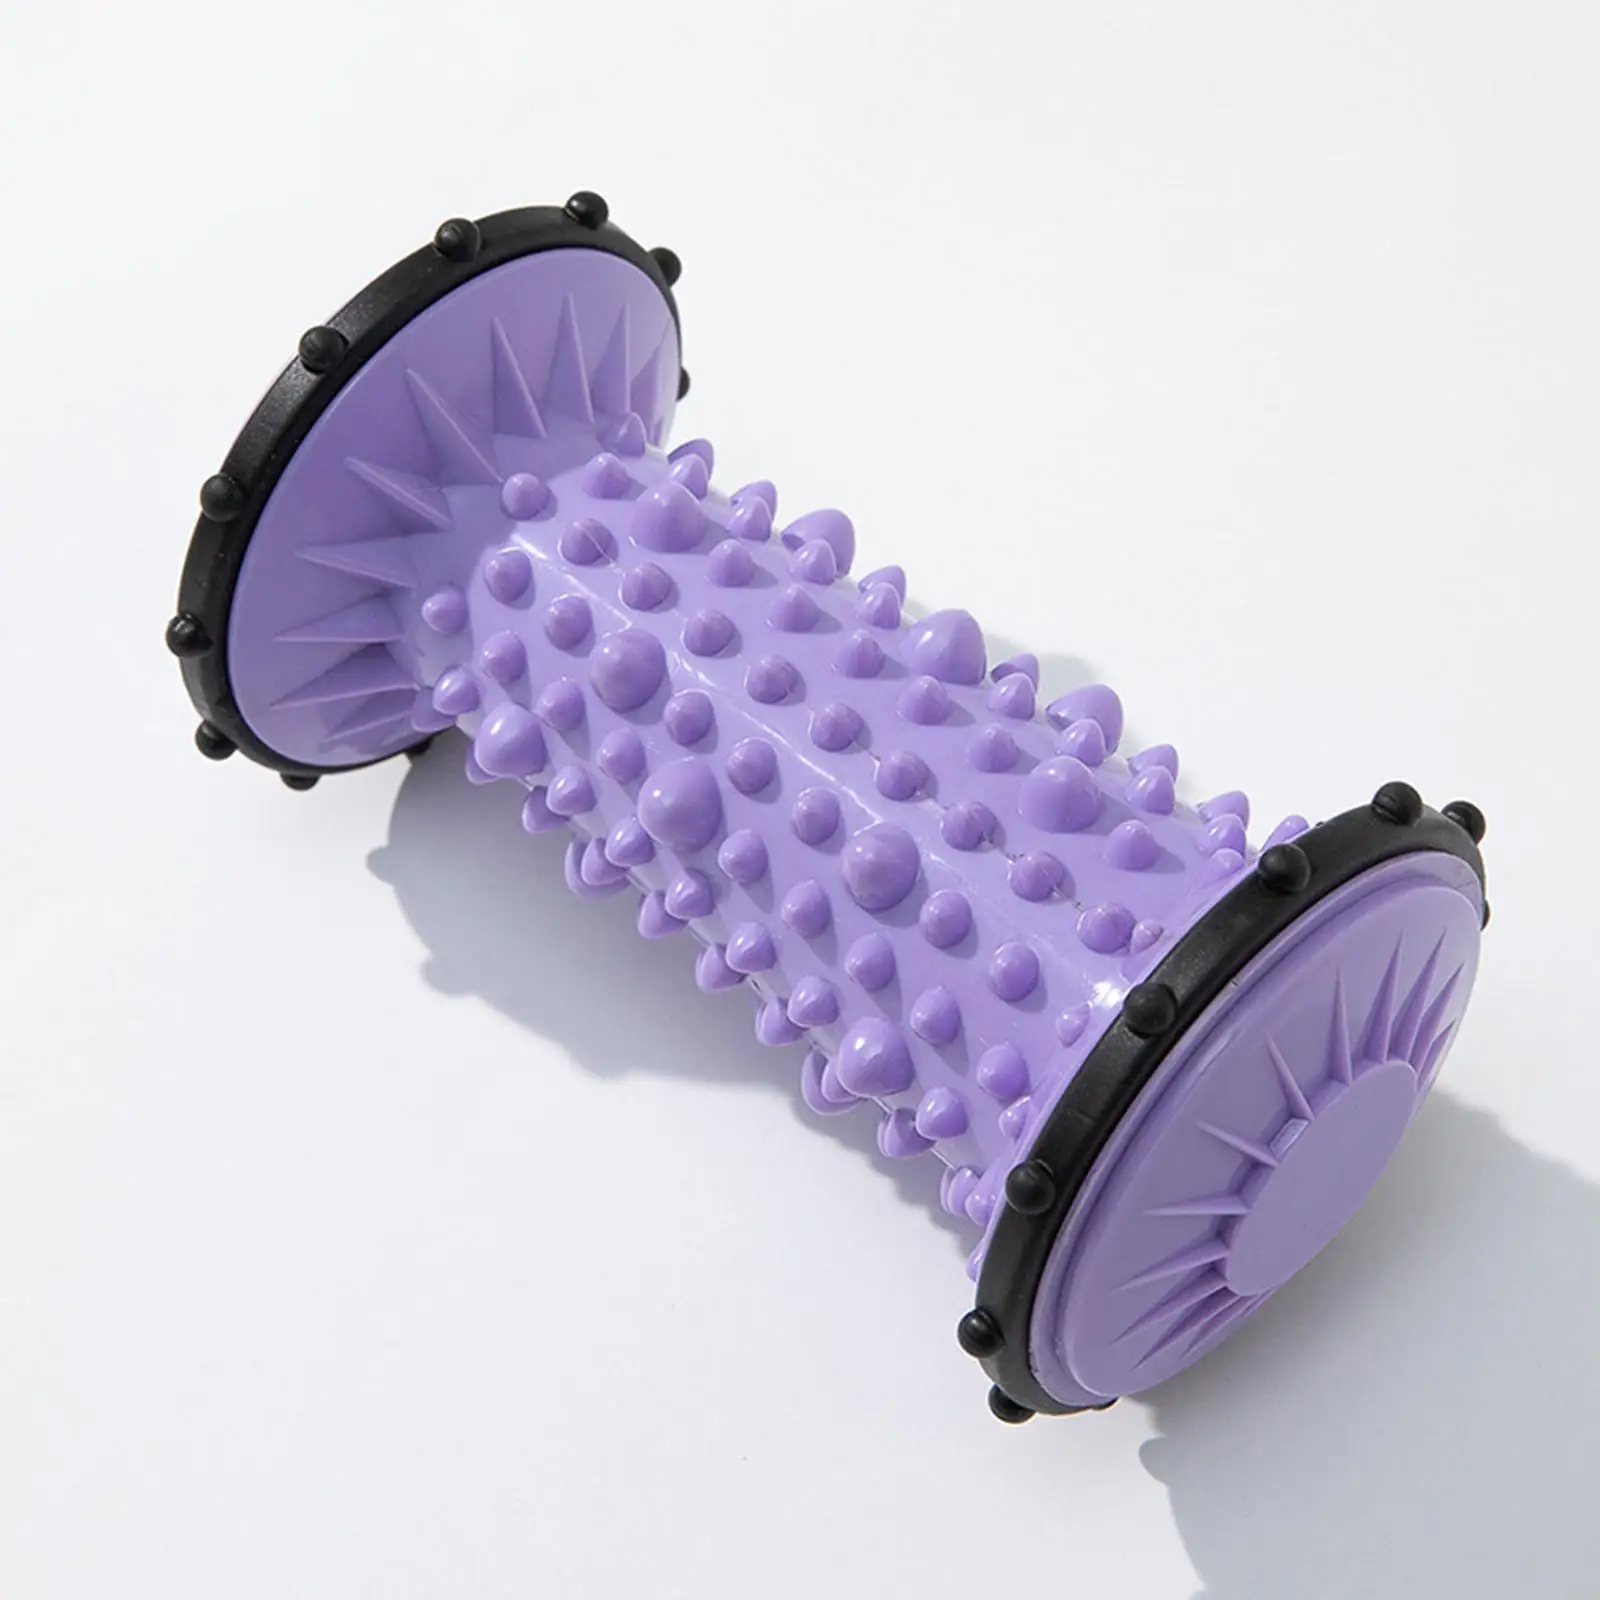 Foot Roller Tight Muscles Relax Handheld Feet Massager Foot Massage Roller